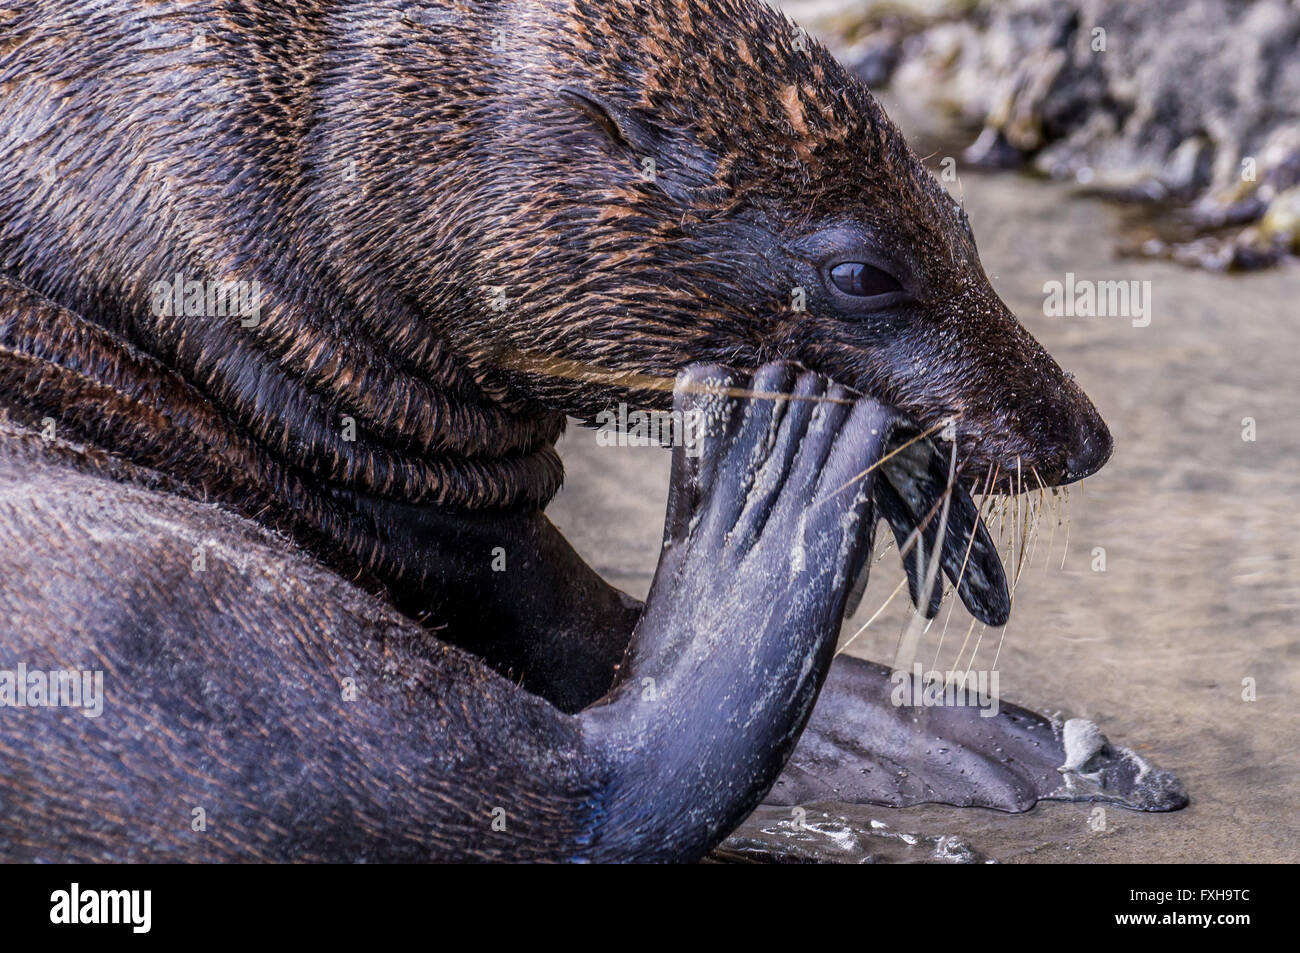 Nuova Zelanda nel mese di febbraio 2016: Un adulto tentativi di guarnizione per rompere un guscio a mangiare le gustose cozze all'interno. Foto Stock